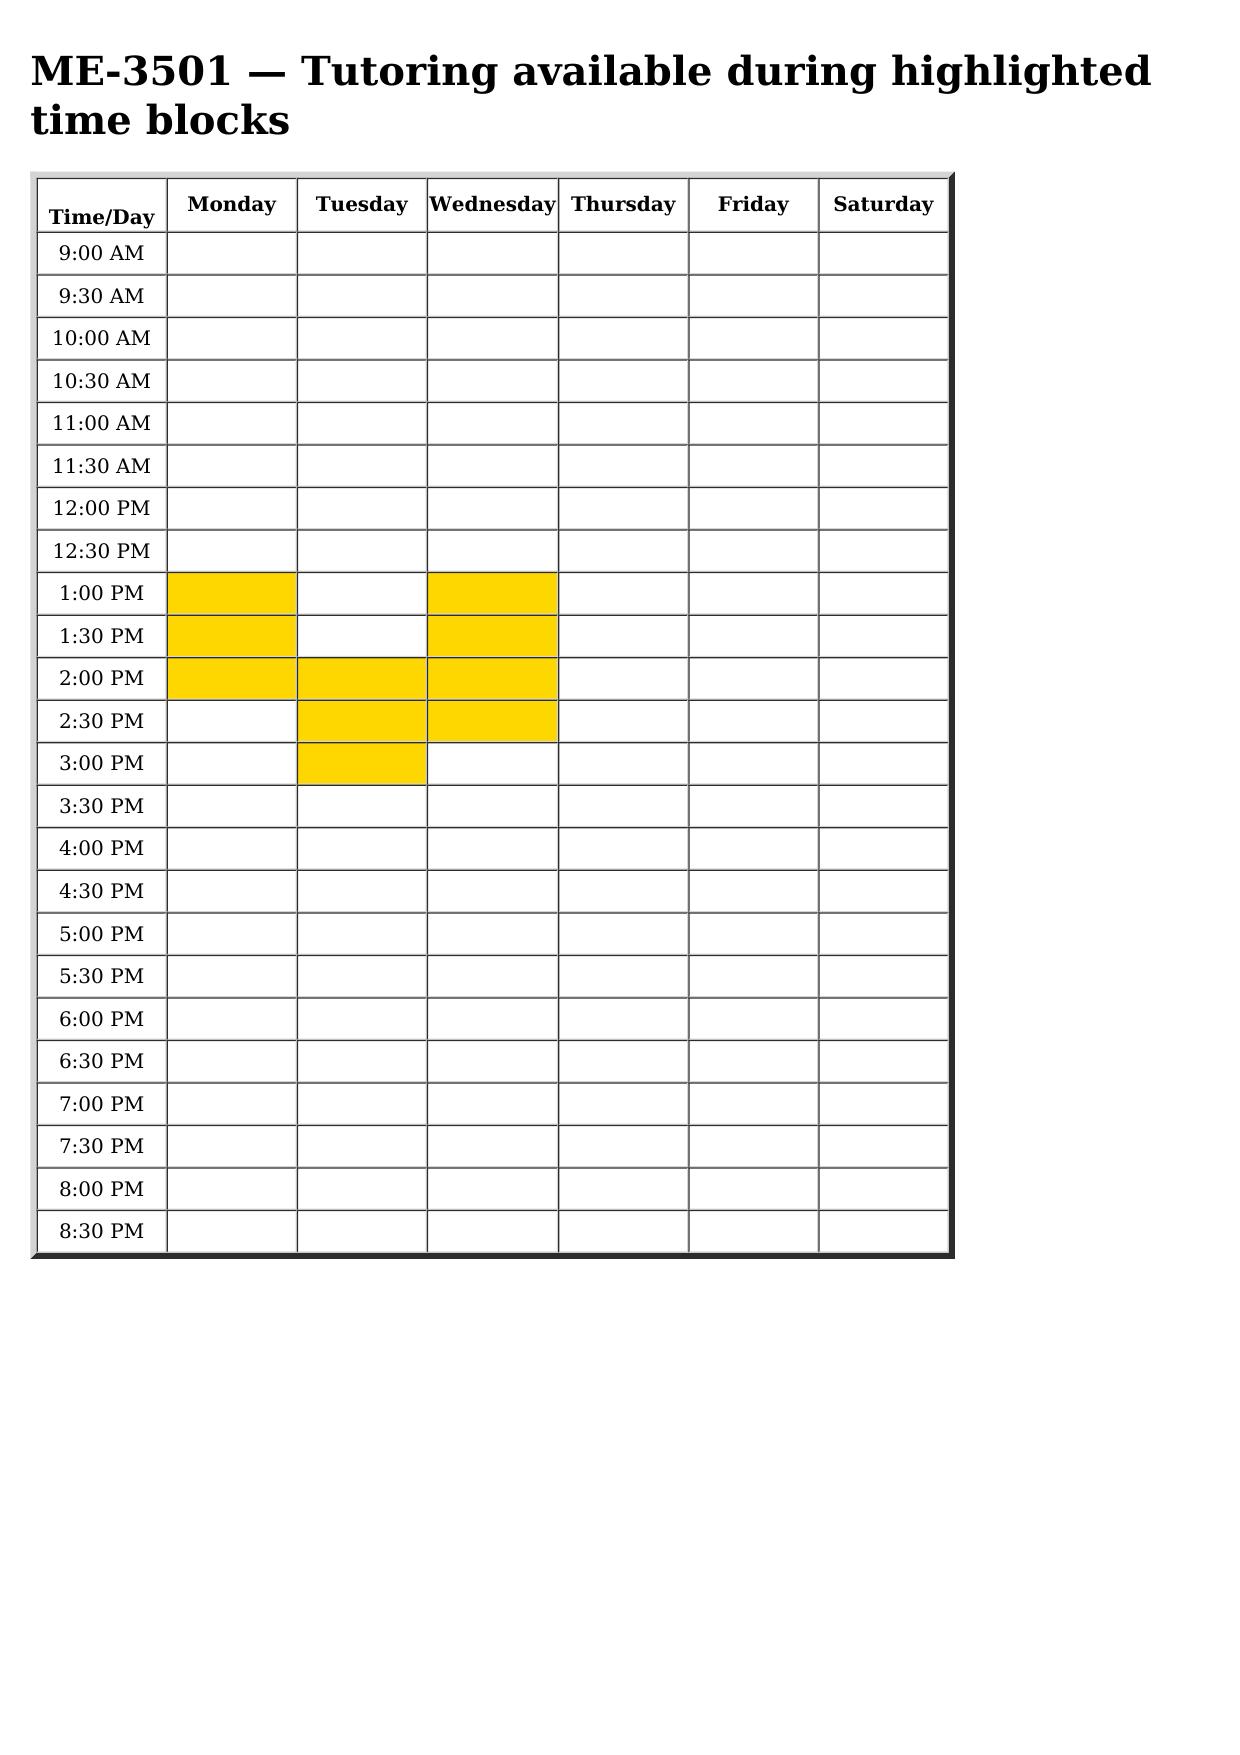 me 3501 schedule